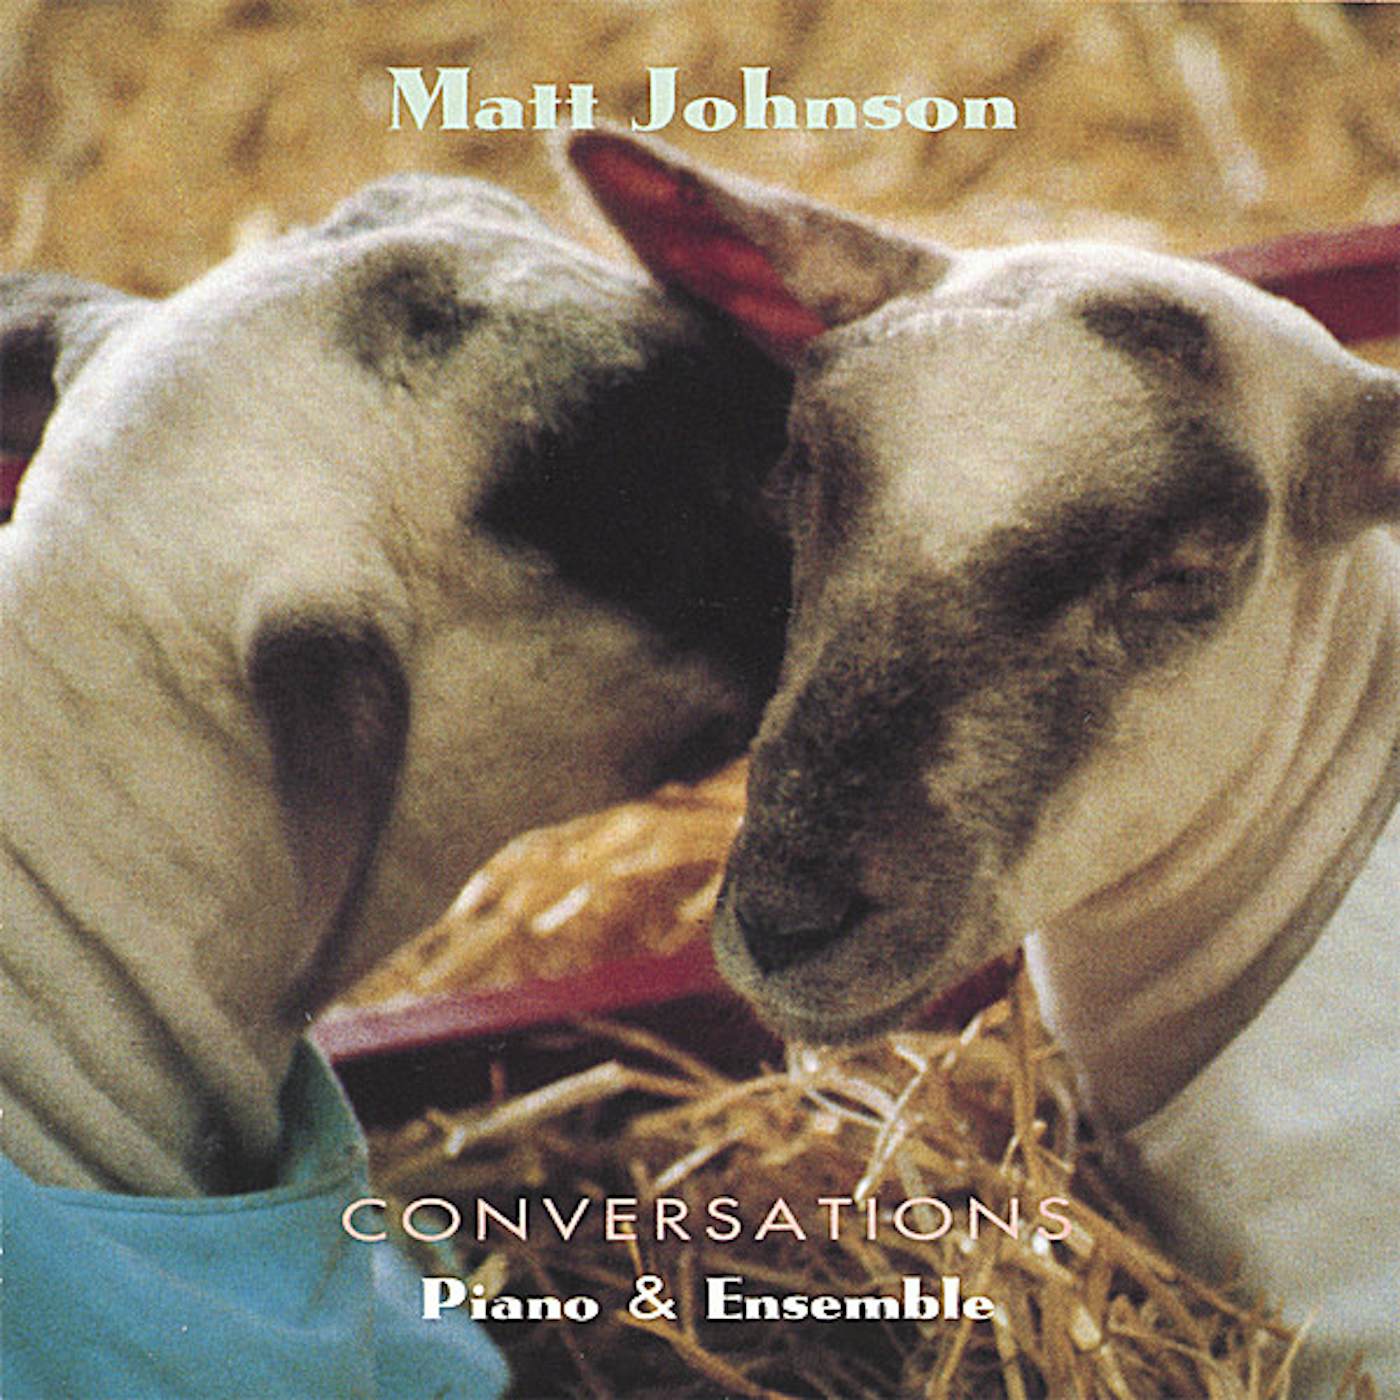 Matt Johnson CONVERSATIONS CD